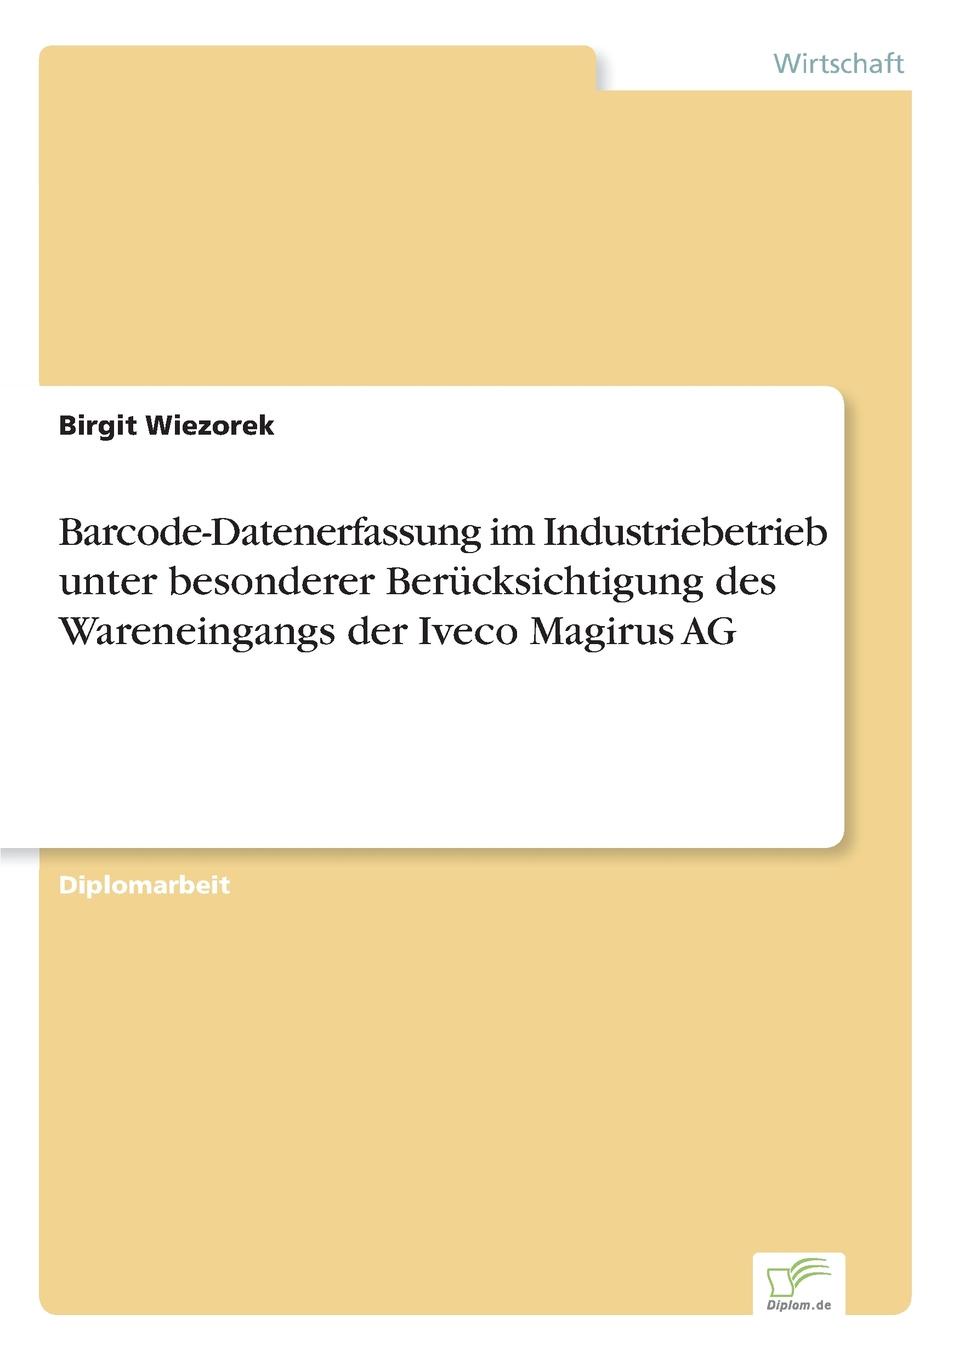 Barcode-Datenerfassung im Industriebetrieb unter besonderer Berucksichtigung des Wareneingangs der Iveco Magirus AG